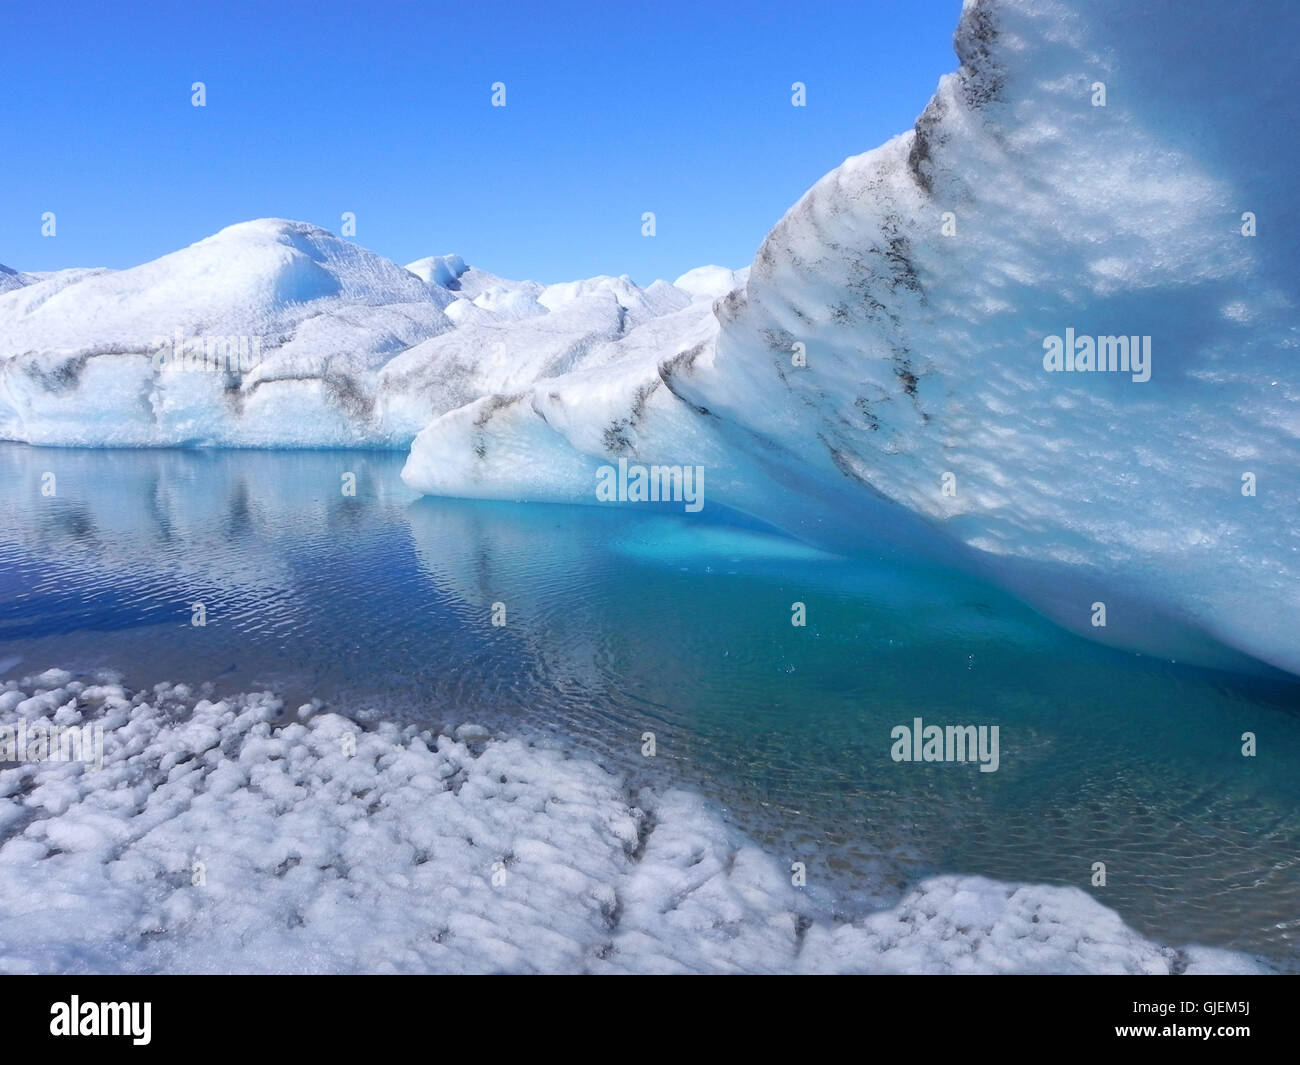 Schmelzendes Eis in Grönland - Eishöhle mit blauem Wasser auf Binneneisenblech Stockfoto